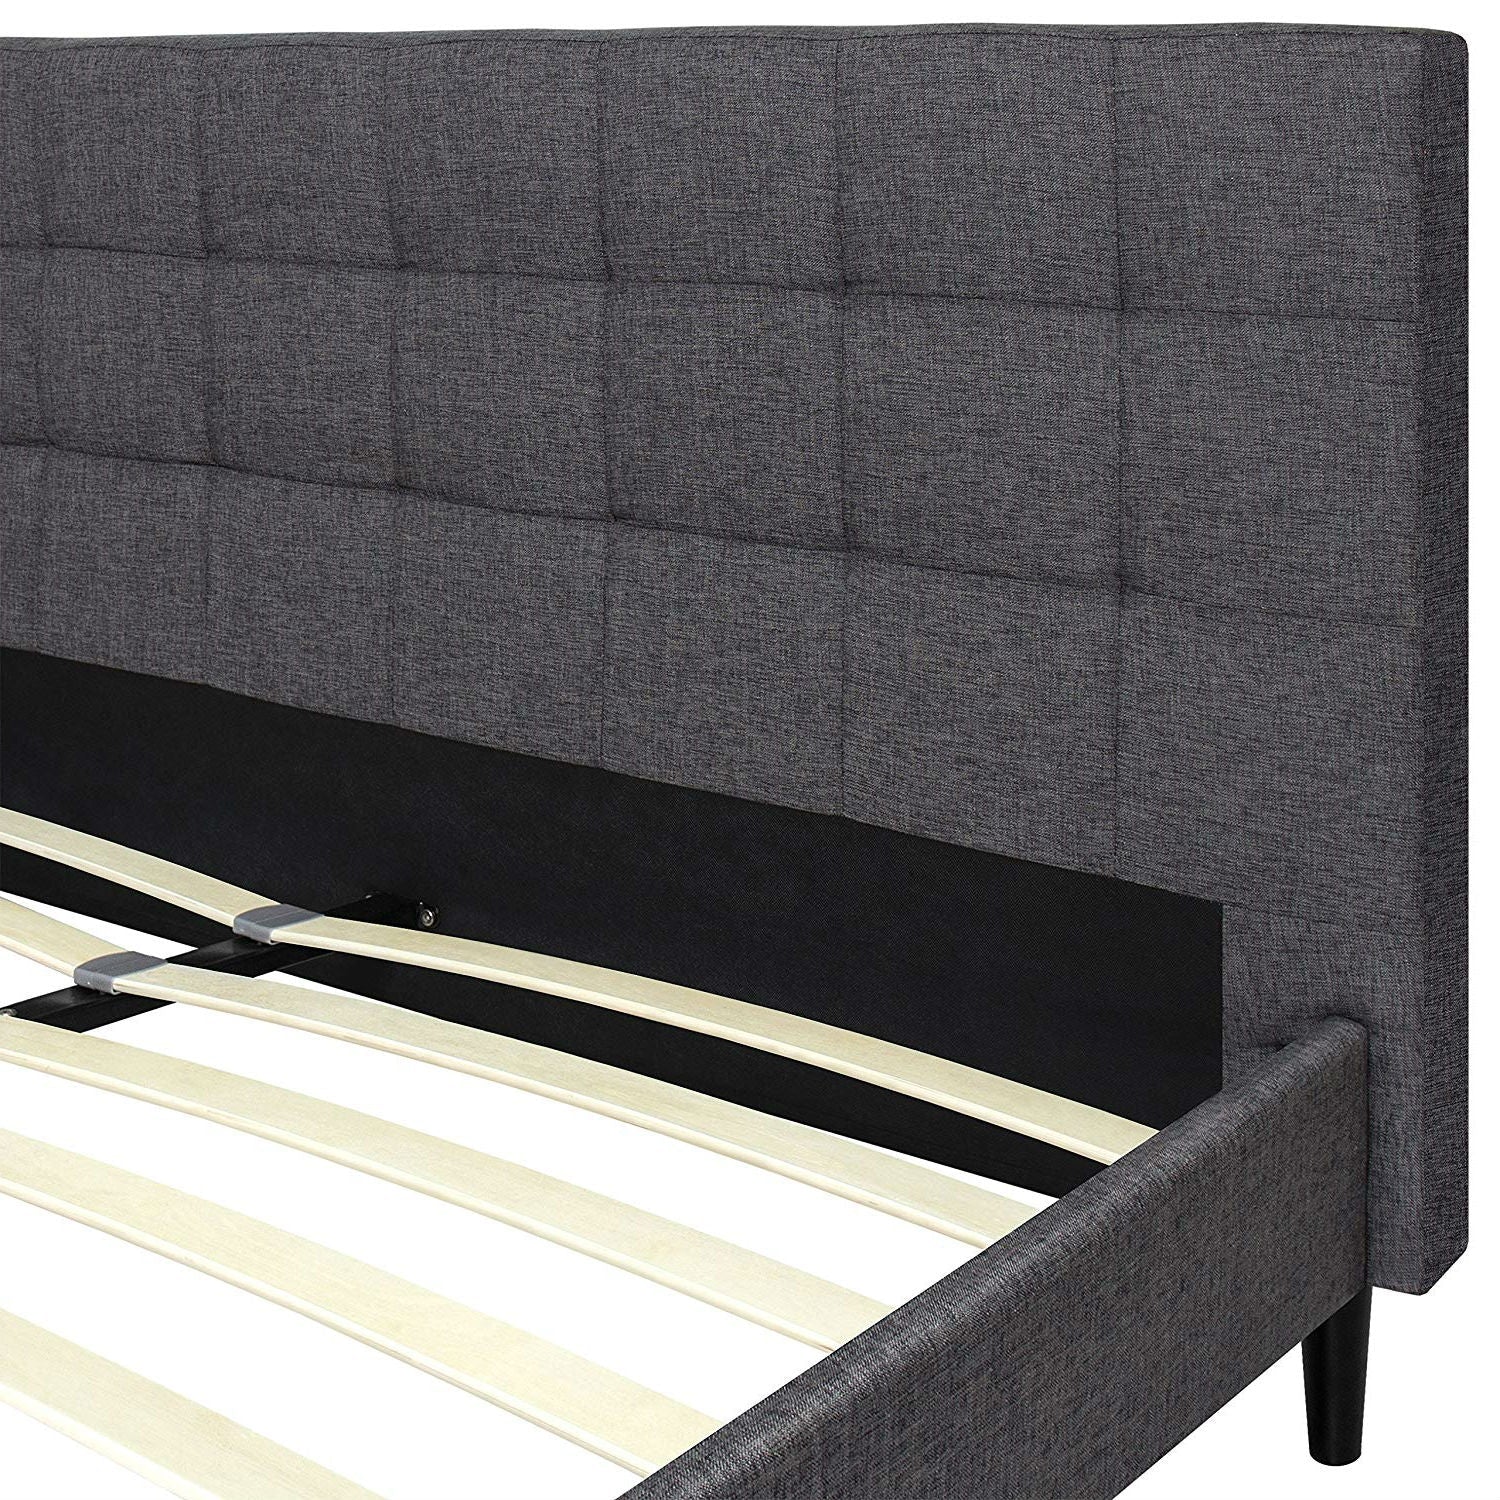 Bedroom > Bed Frames > Platform Beds - Full Size Grey Mid-Century Modern Upholstered Platform Bed Frame With Headboard